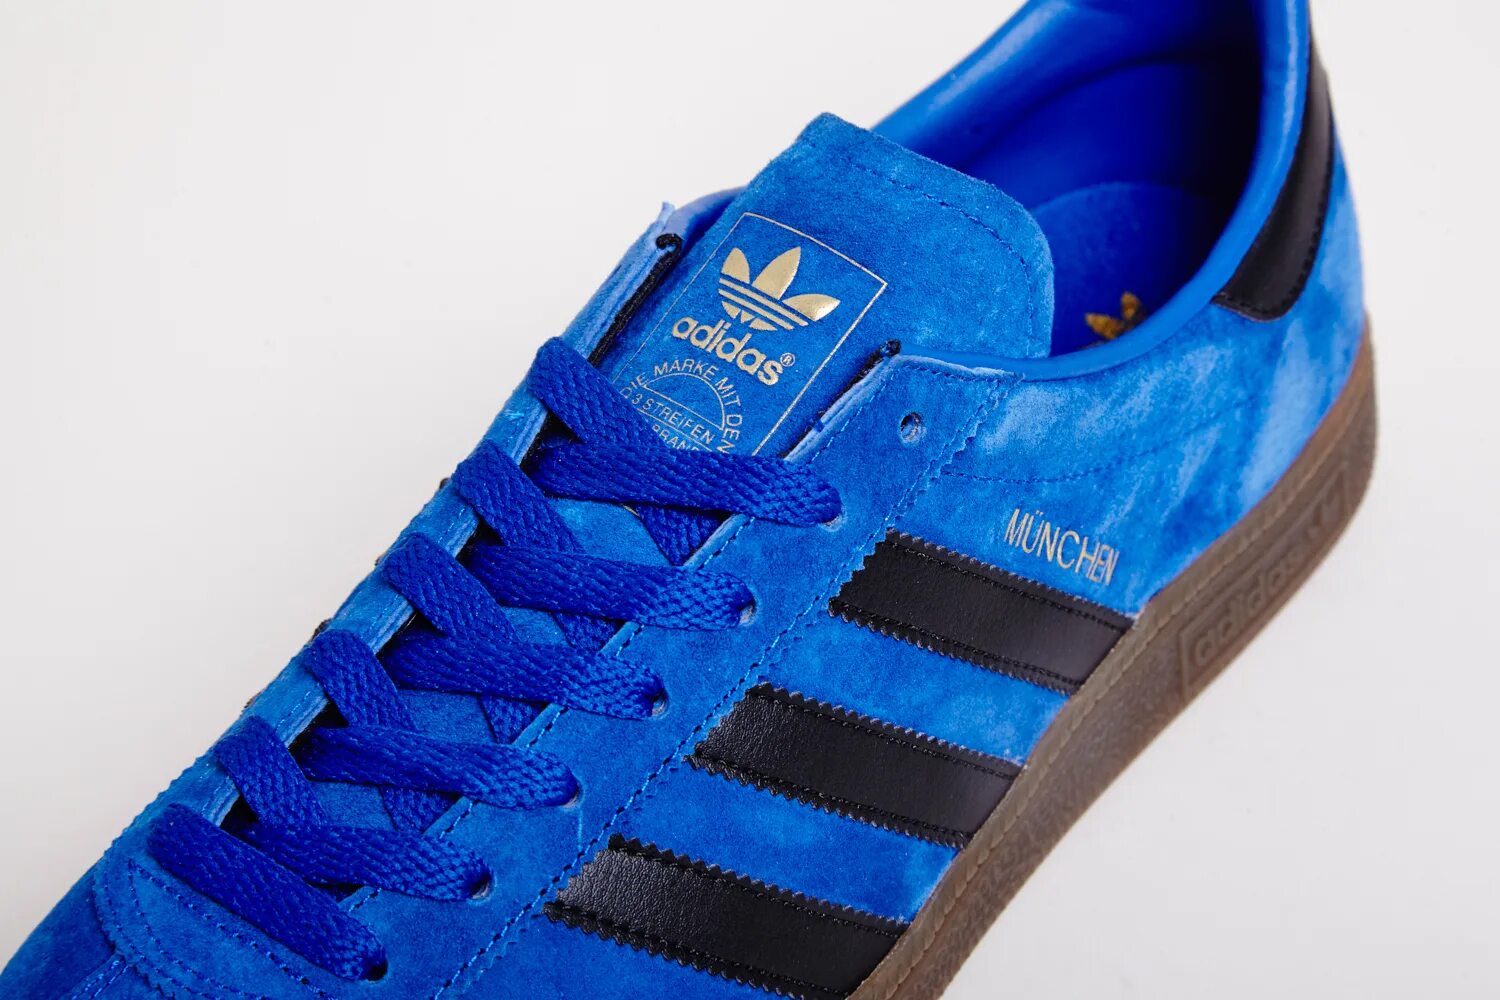 Кроссовки München adidas Originals. Адидас Munchen. Adidas Munchen (Dark Blue/Collegiate Navy). Adidas Spezial Black Blue. Кроссовки adidas синие